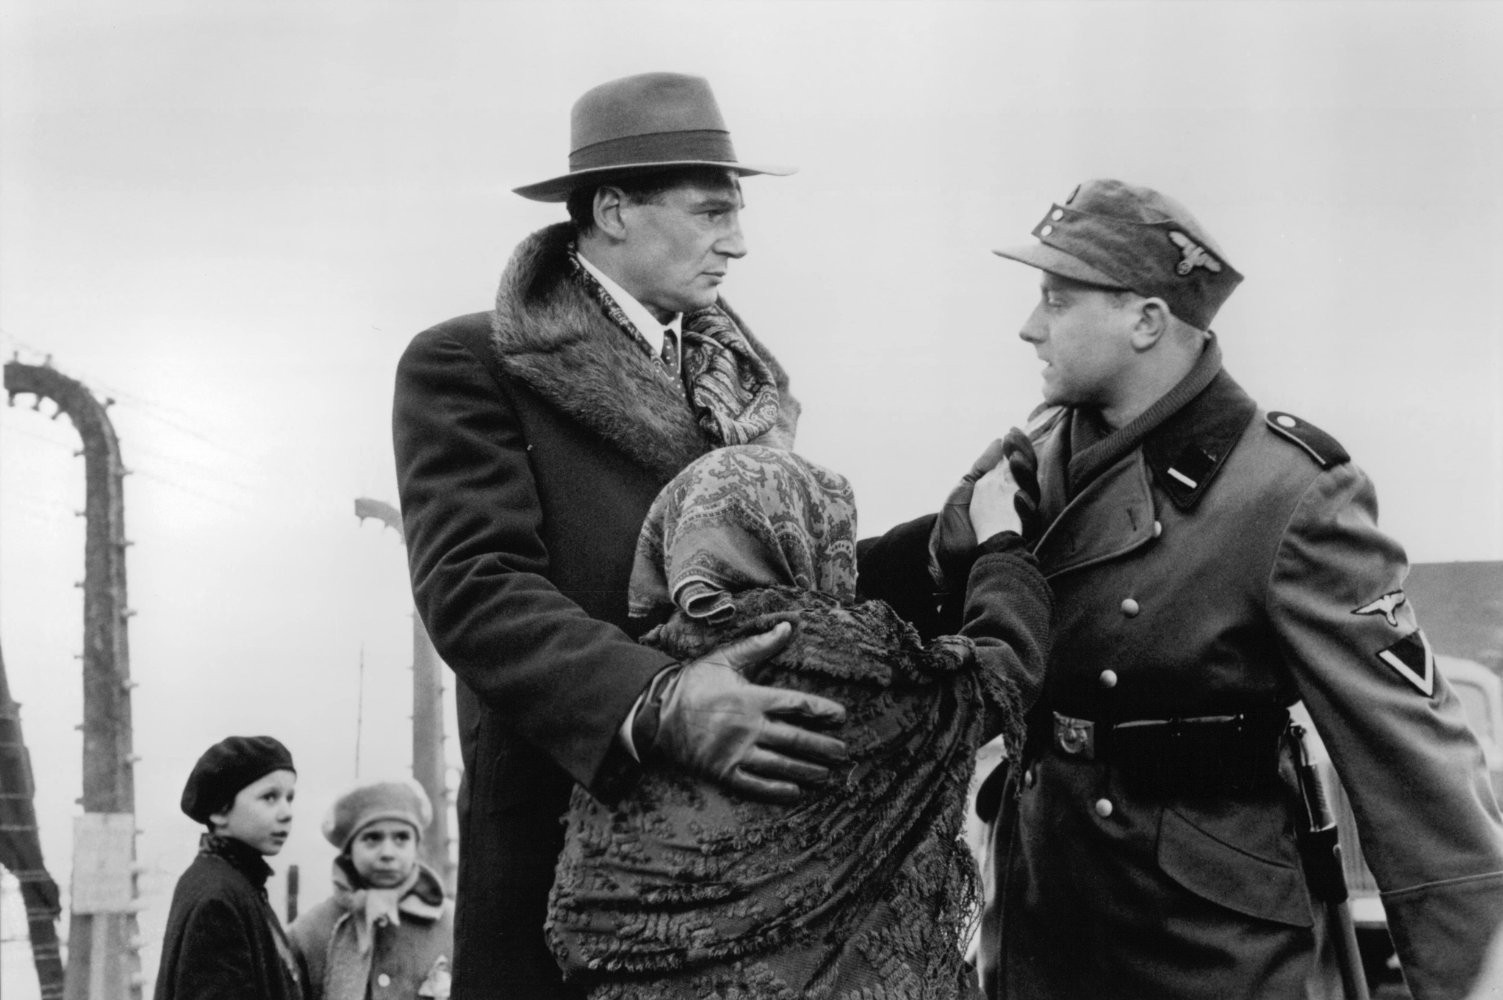 Príbeh Oskara Schindlera, skorumpovaného nacistického obchodníka, ktorý prechádza zmenou vedomia a ukazuje svoju ľudskosť, čím nakoniec dokáže zachrániť viac ako tisíc židov z holokaustu. Film režiséra Stevena Spielberga bol verejnosťou veľmi dobre prijatý a v tom roku získal Oscarov za Najlepšiu réžiu a Najlepší film.